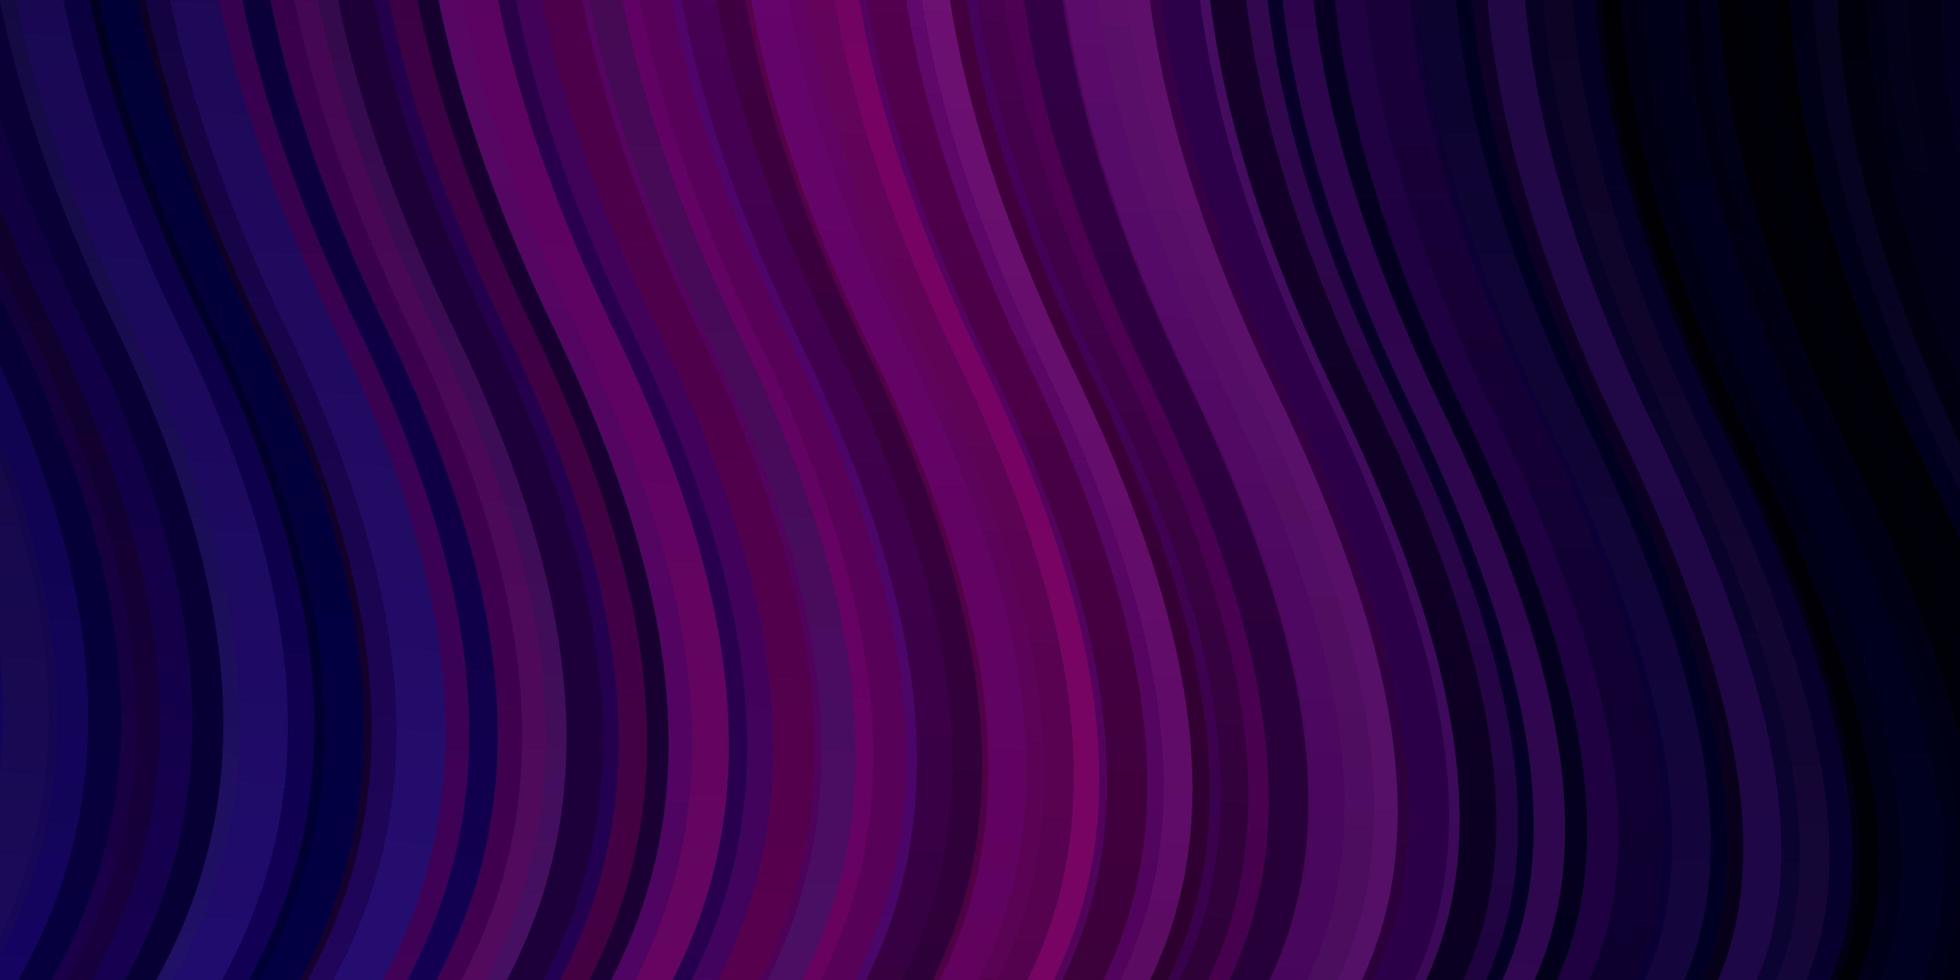 texture de vecteur violet foncé, rose avec des lignes ironiques.